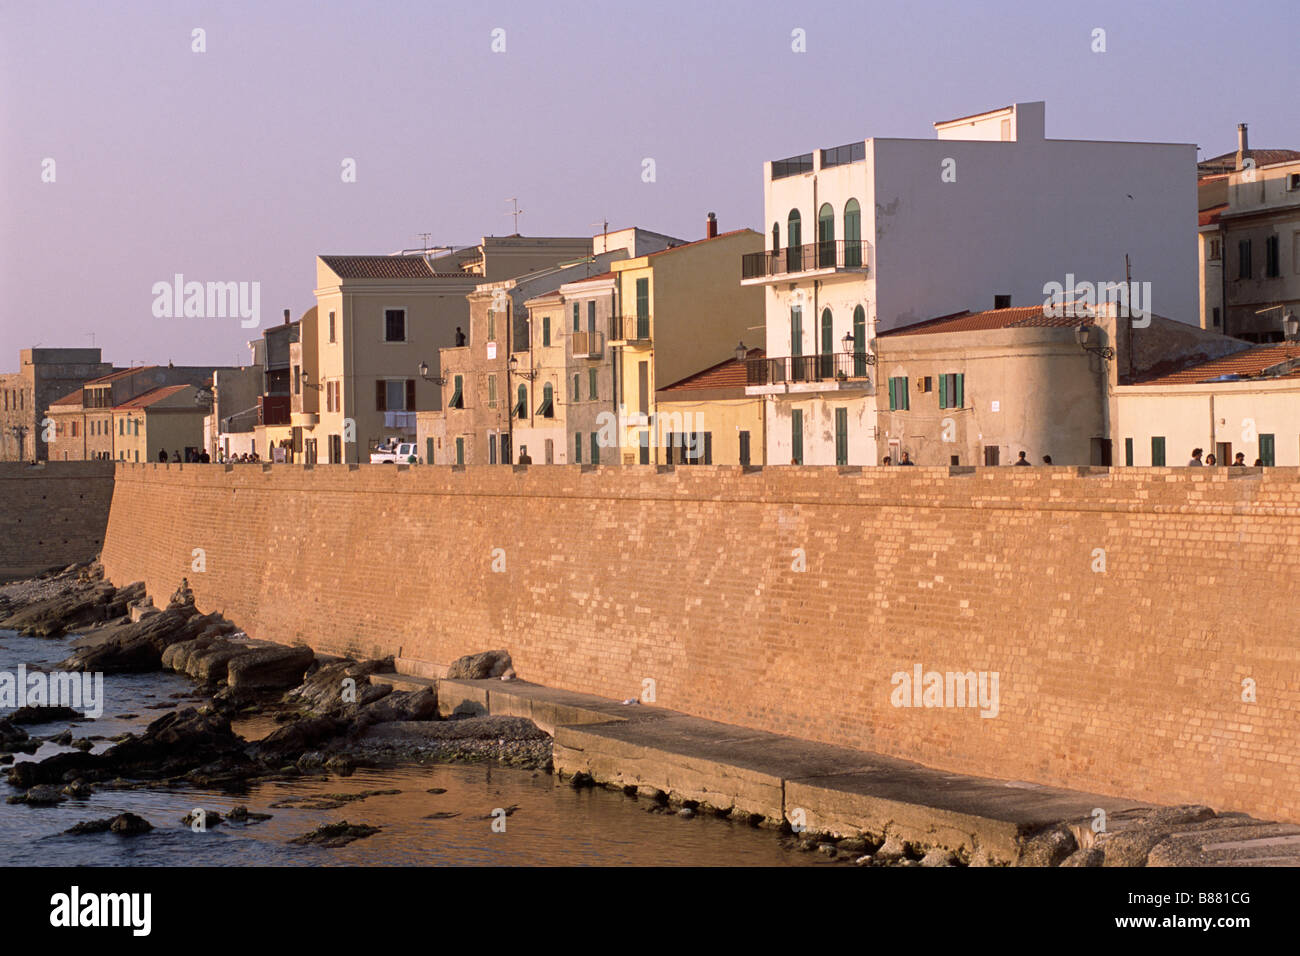 Italy, Sardinia, Alghero, walls Stock Photo